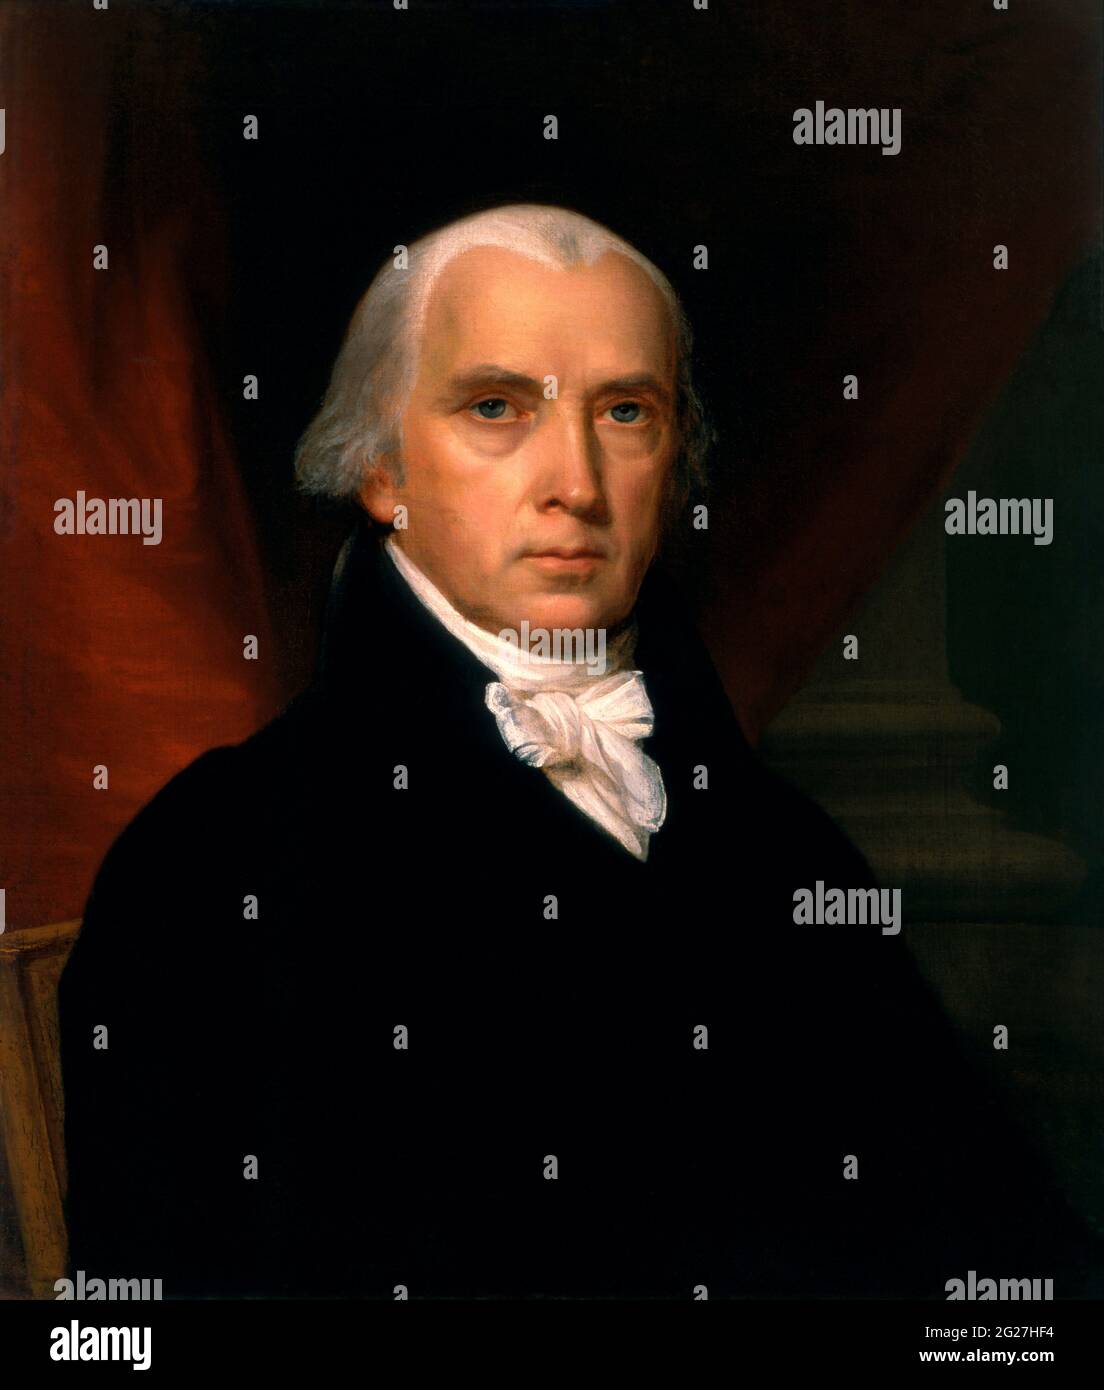 Portrait de James Madison, 4e président des États-Unis. Banque D'Images